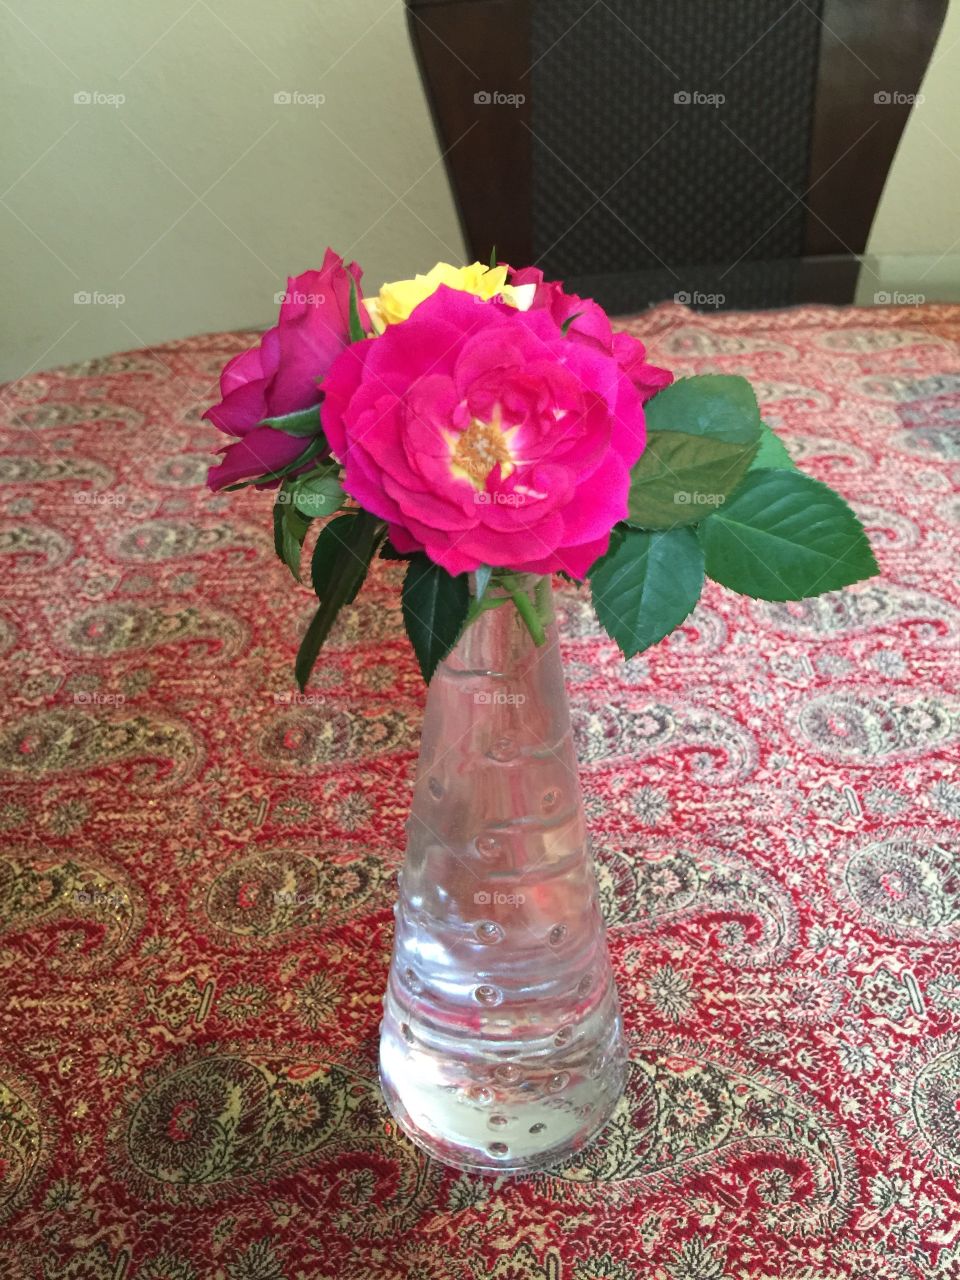 Flower
Rose